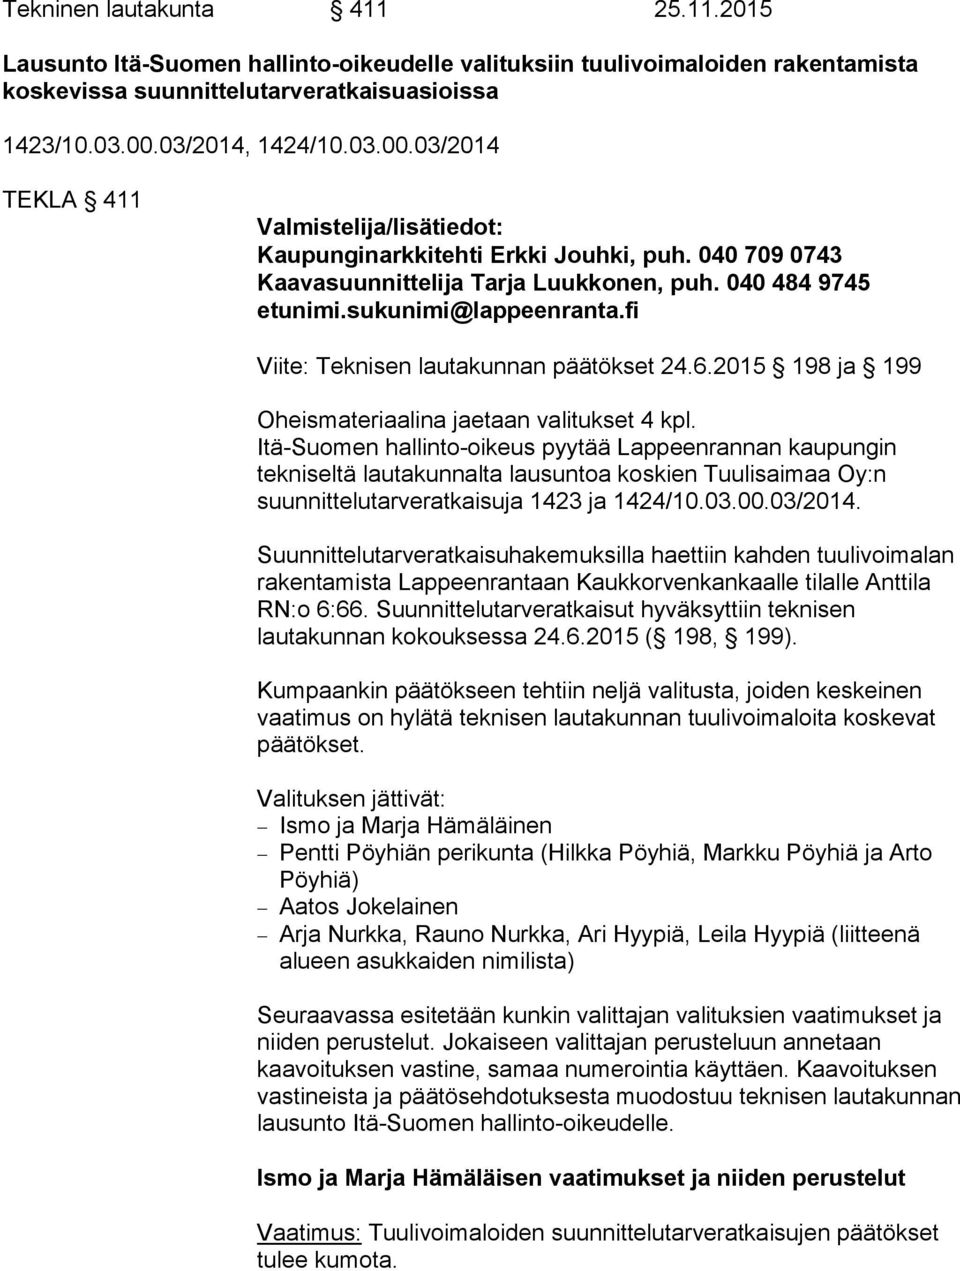 sukunimi@lappeenranta.fi Viite: Teknisen lautakunnan päätökset 24.6.2015 198 ja 199 Oheismateriaalina jaetaan valitukset 4 kpl.